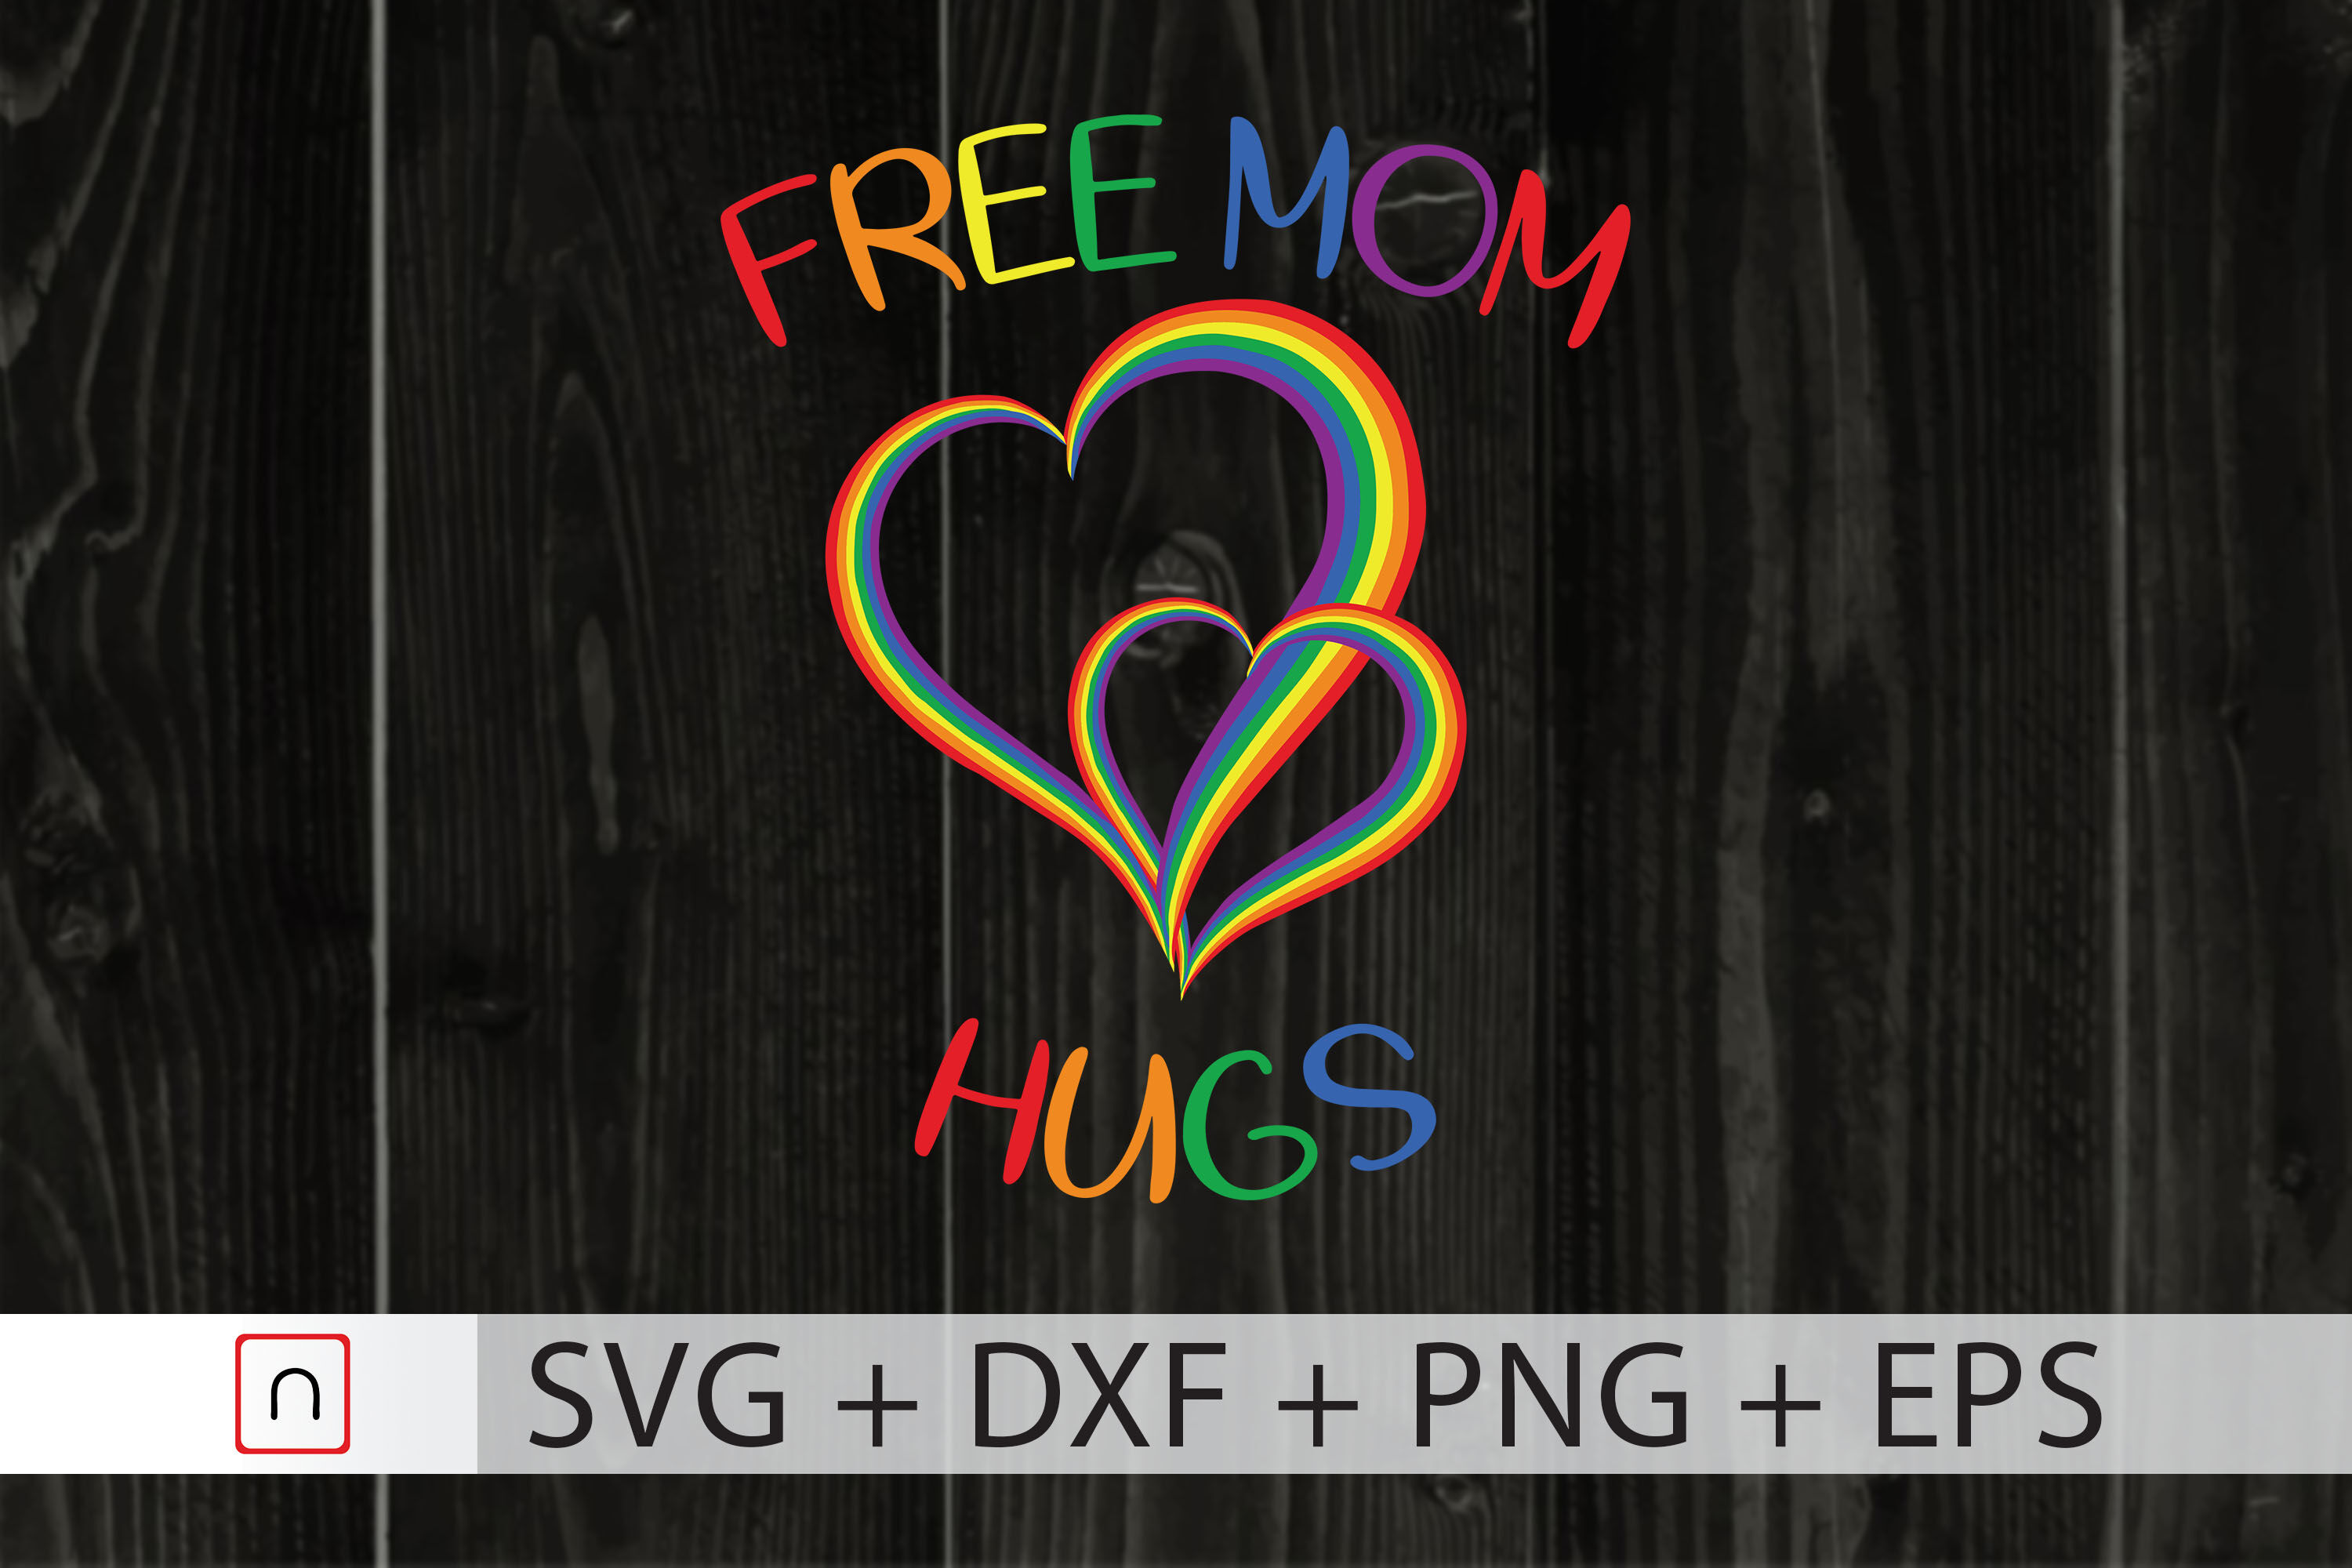 Download Free Mom Hugs Svg Rainbow Heart Lgbtq By Novalia Thehungryjpeg Com